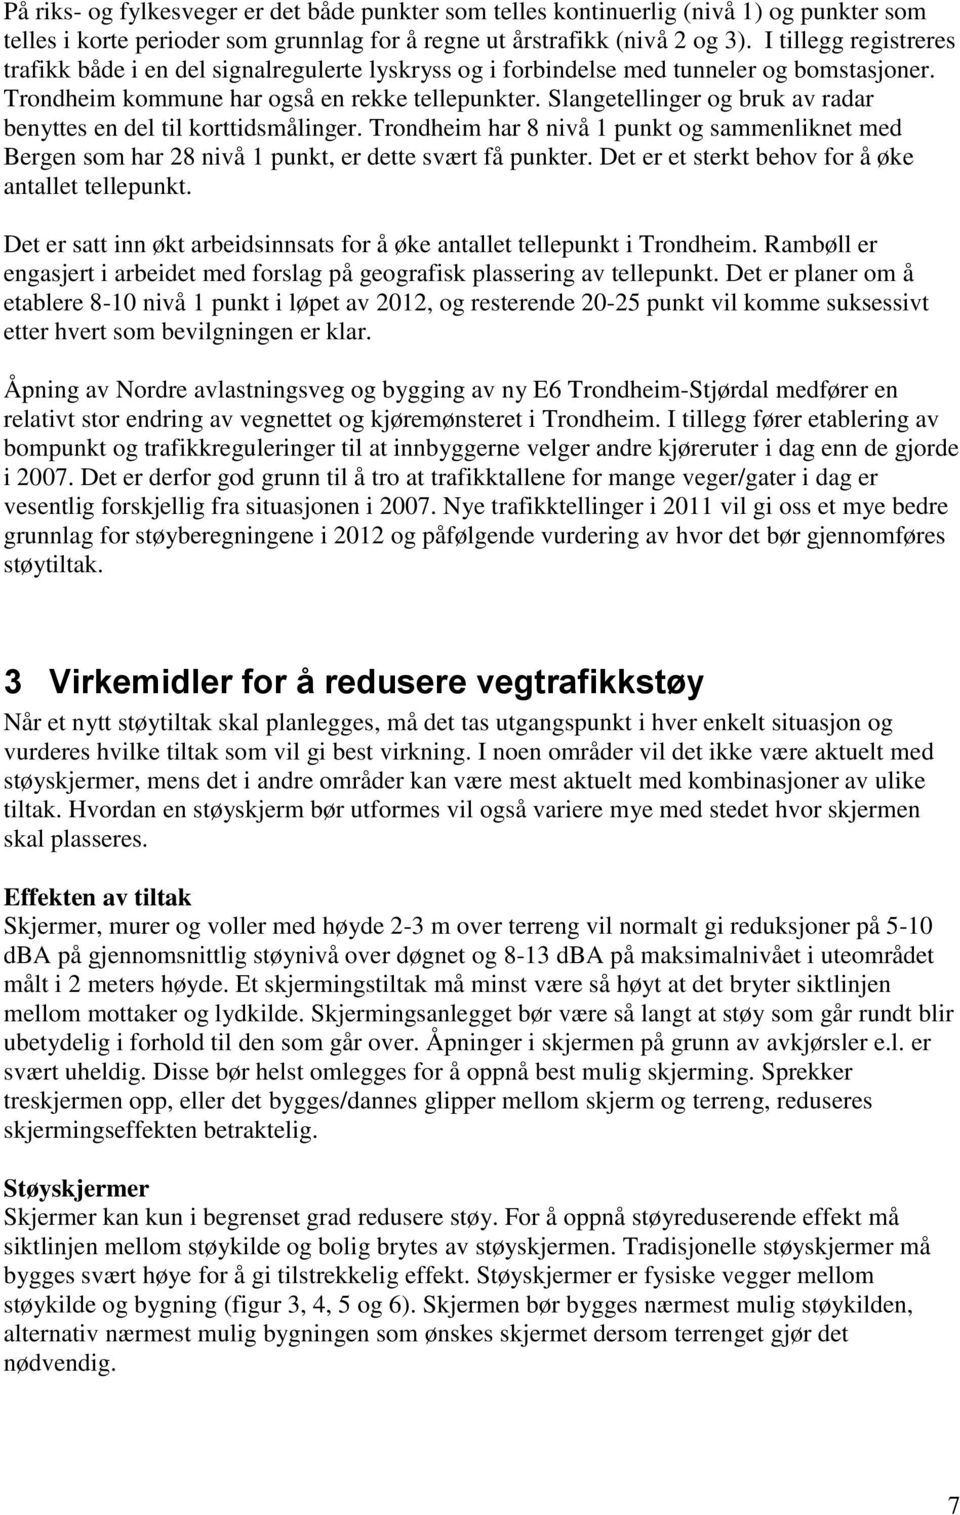 Slangetellinger og bruk av radar benyttes en del til korttidsmålinger. Trondheim har 8 nivå 1 punkt og sammenliknet med Bergen som har 28 nivå 1 punkt, er dette svært få punkter.